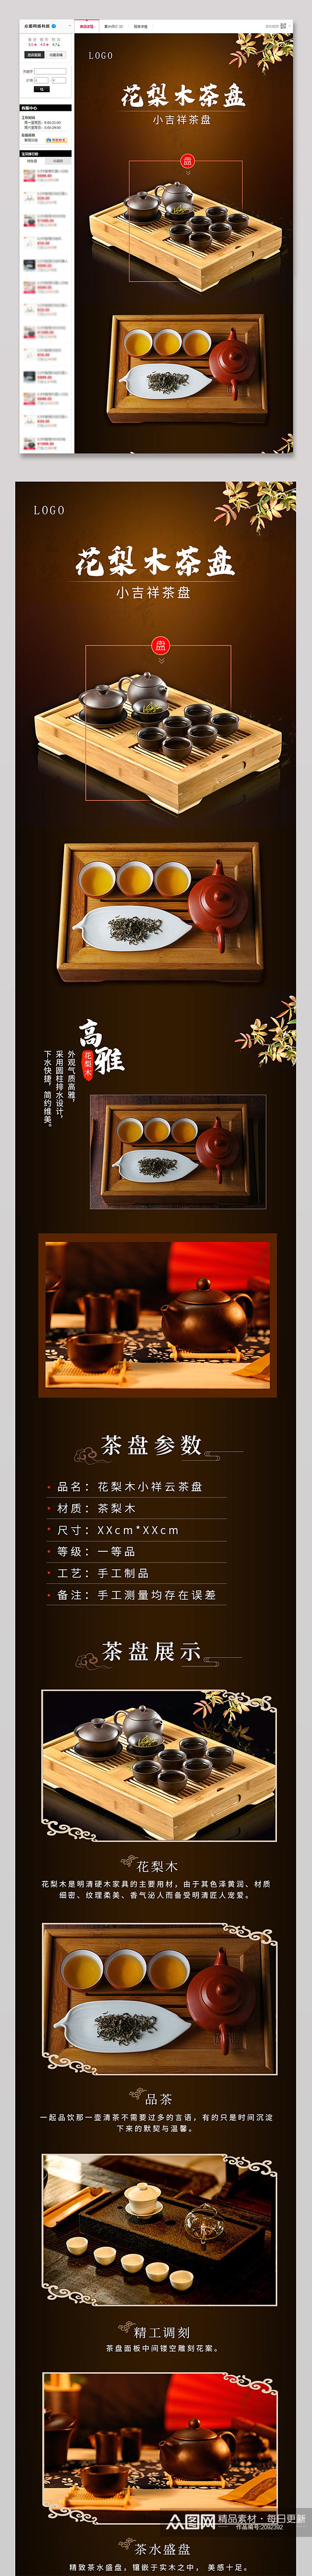 茶盘详情页家具餐具茶具杯子中国风素材